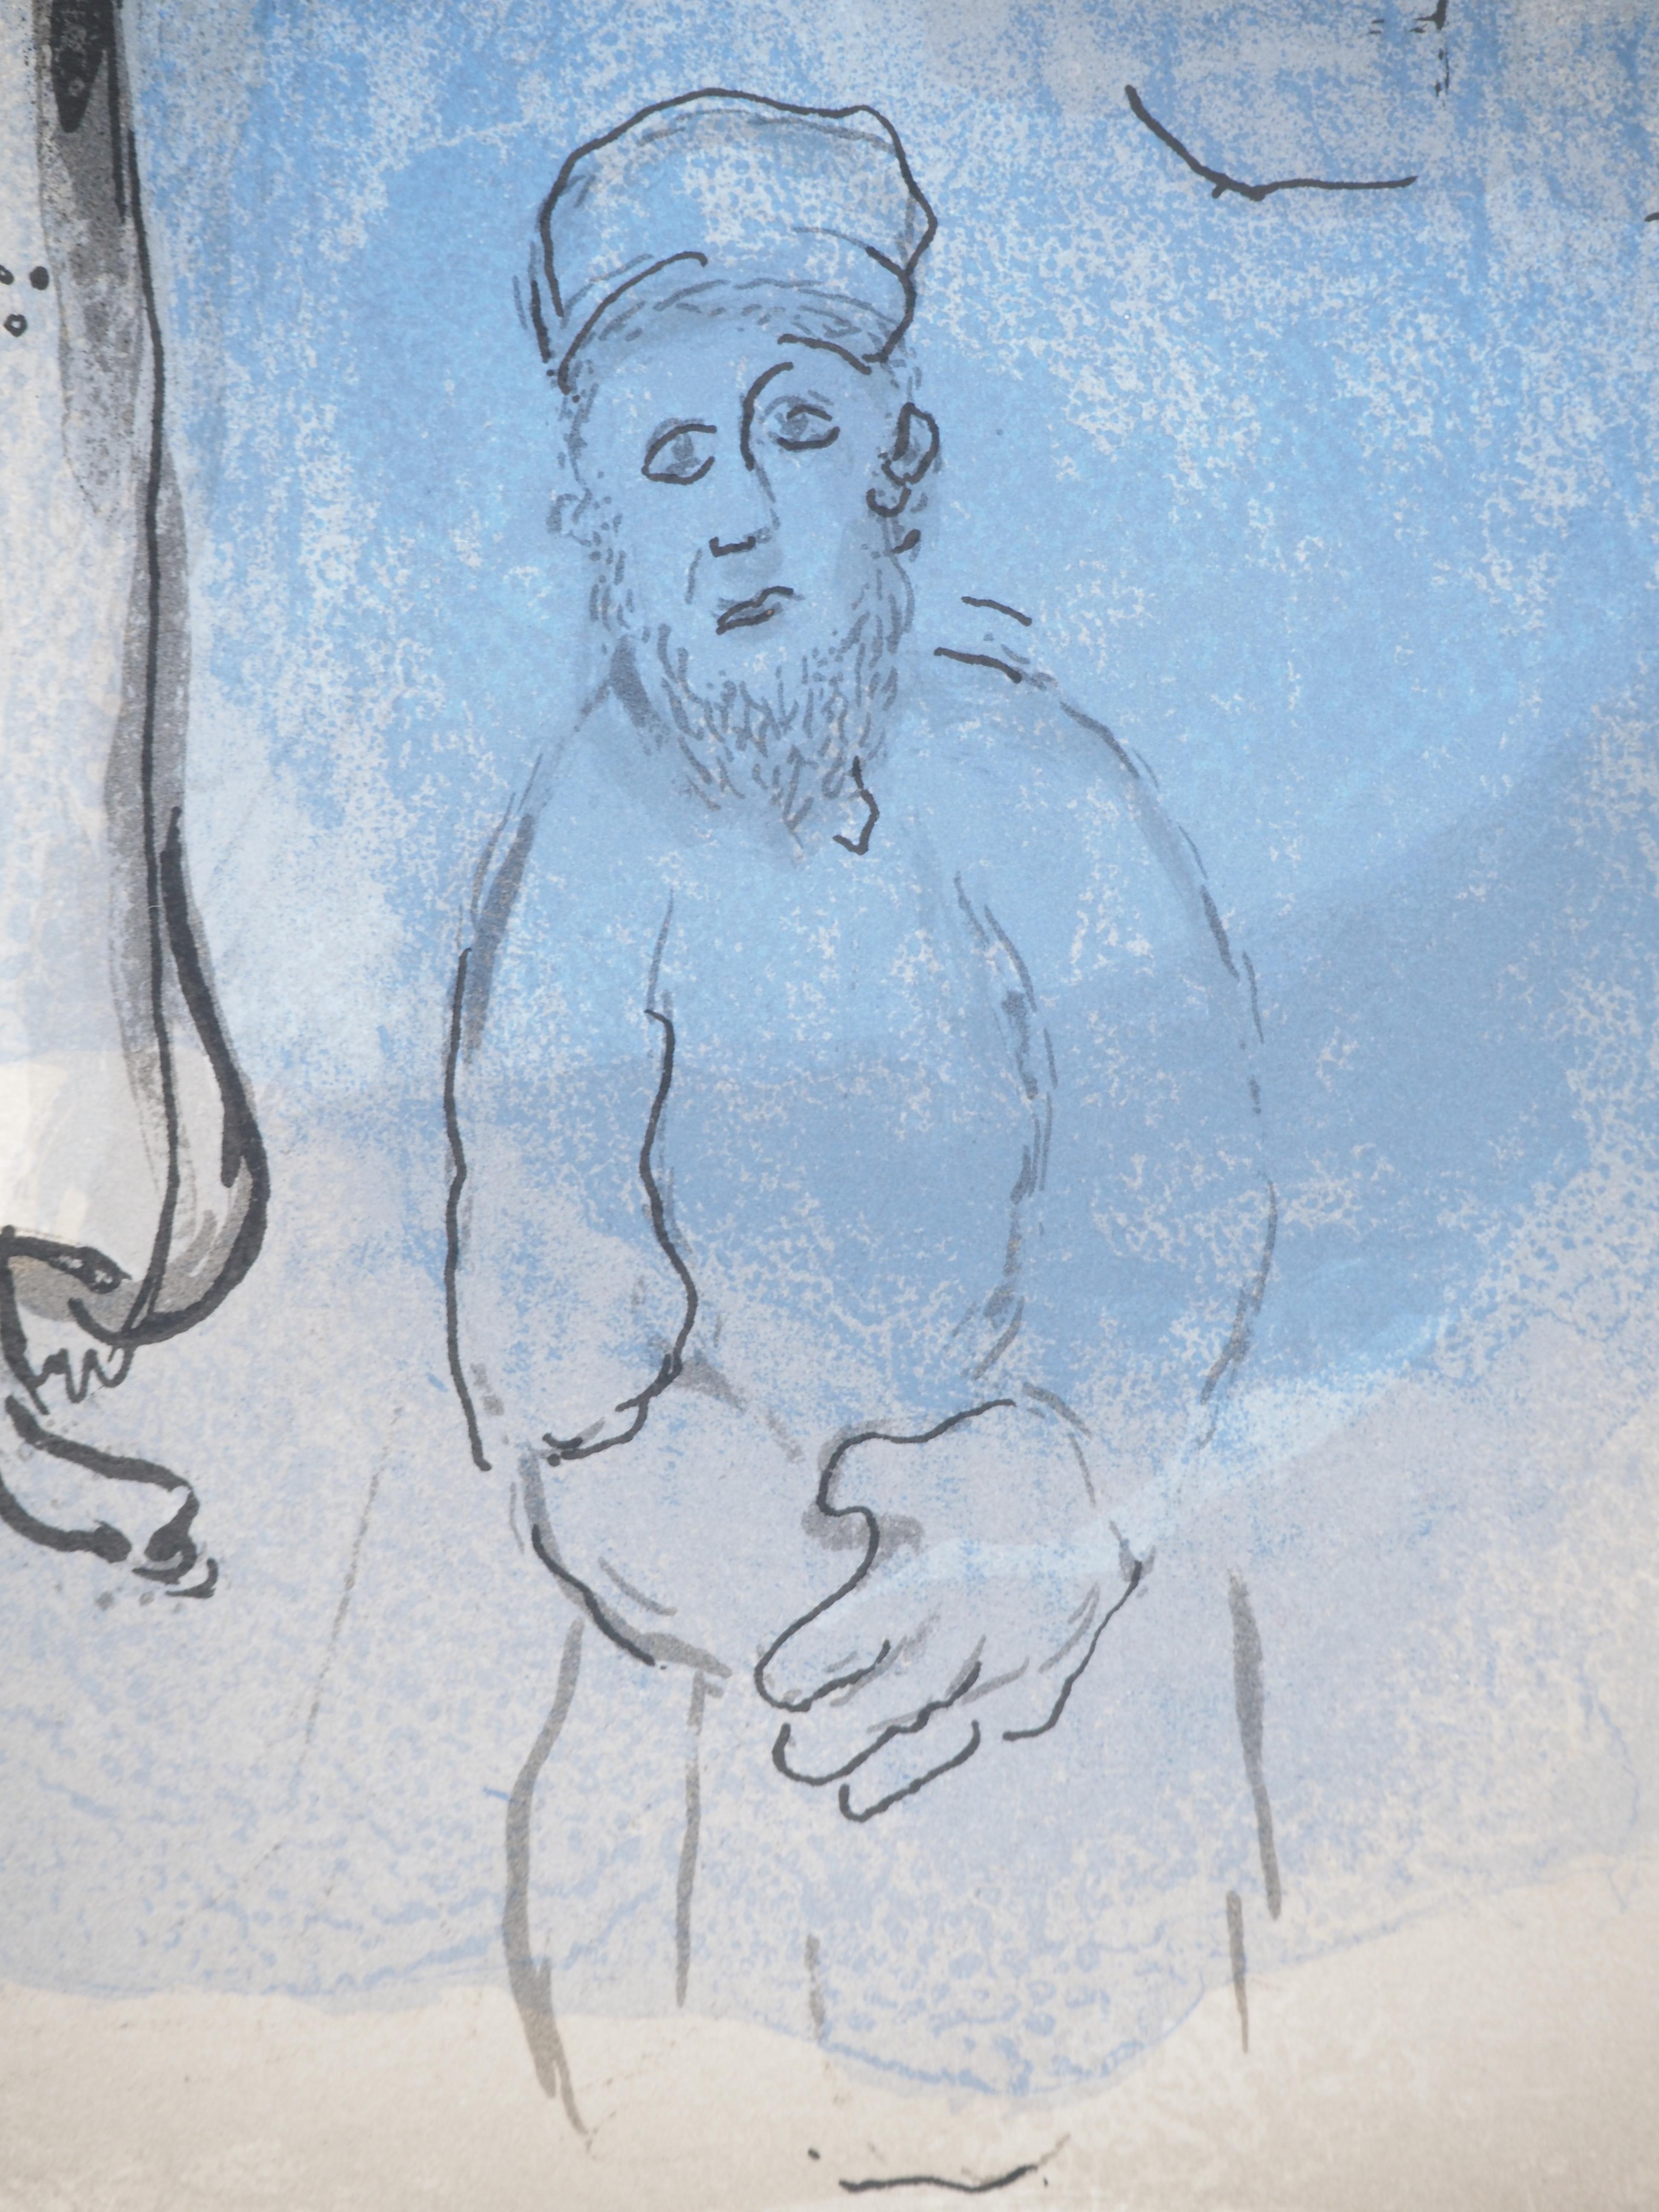 Marc Chagall (1887-1985) 
La Bible, Esther et sa cousine

Lithographie originale (Atelier Daeger) 
Sur papier 36 x 26.5 cm (c. 14.2 x 10.2 in)
Deuxième illustration au dos, voir photo n°7 (Mourlot #275) 

RÉFÉRENCE : 
Catalogue raisonné Chagall